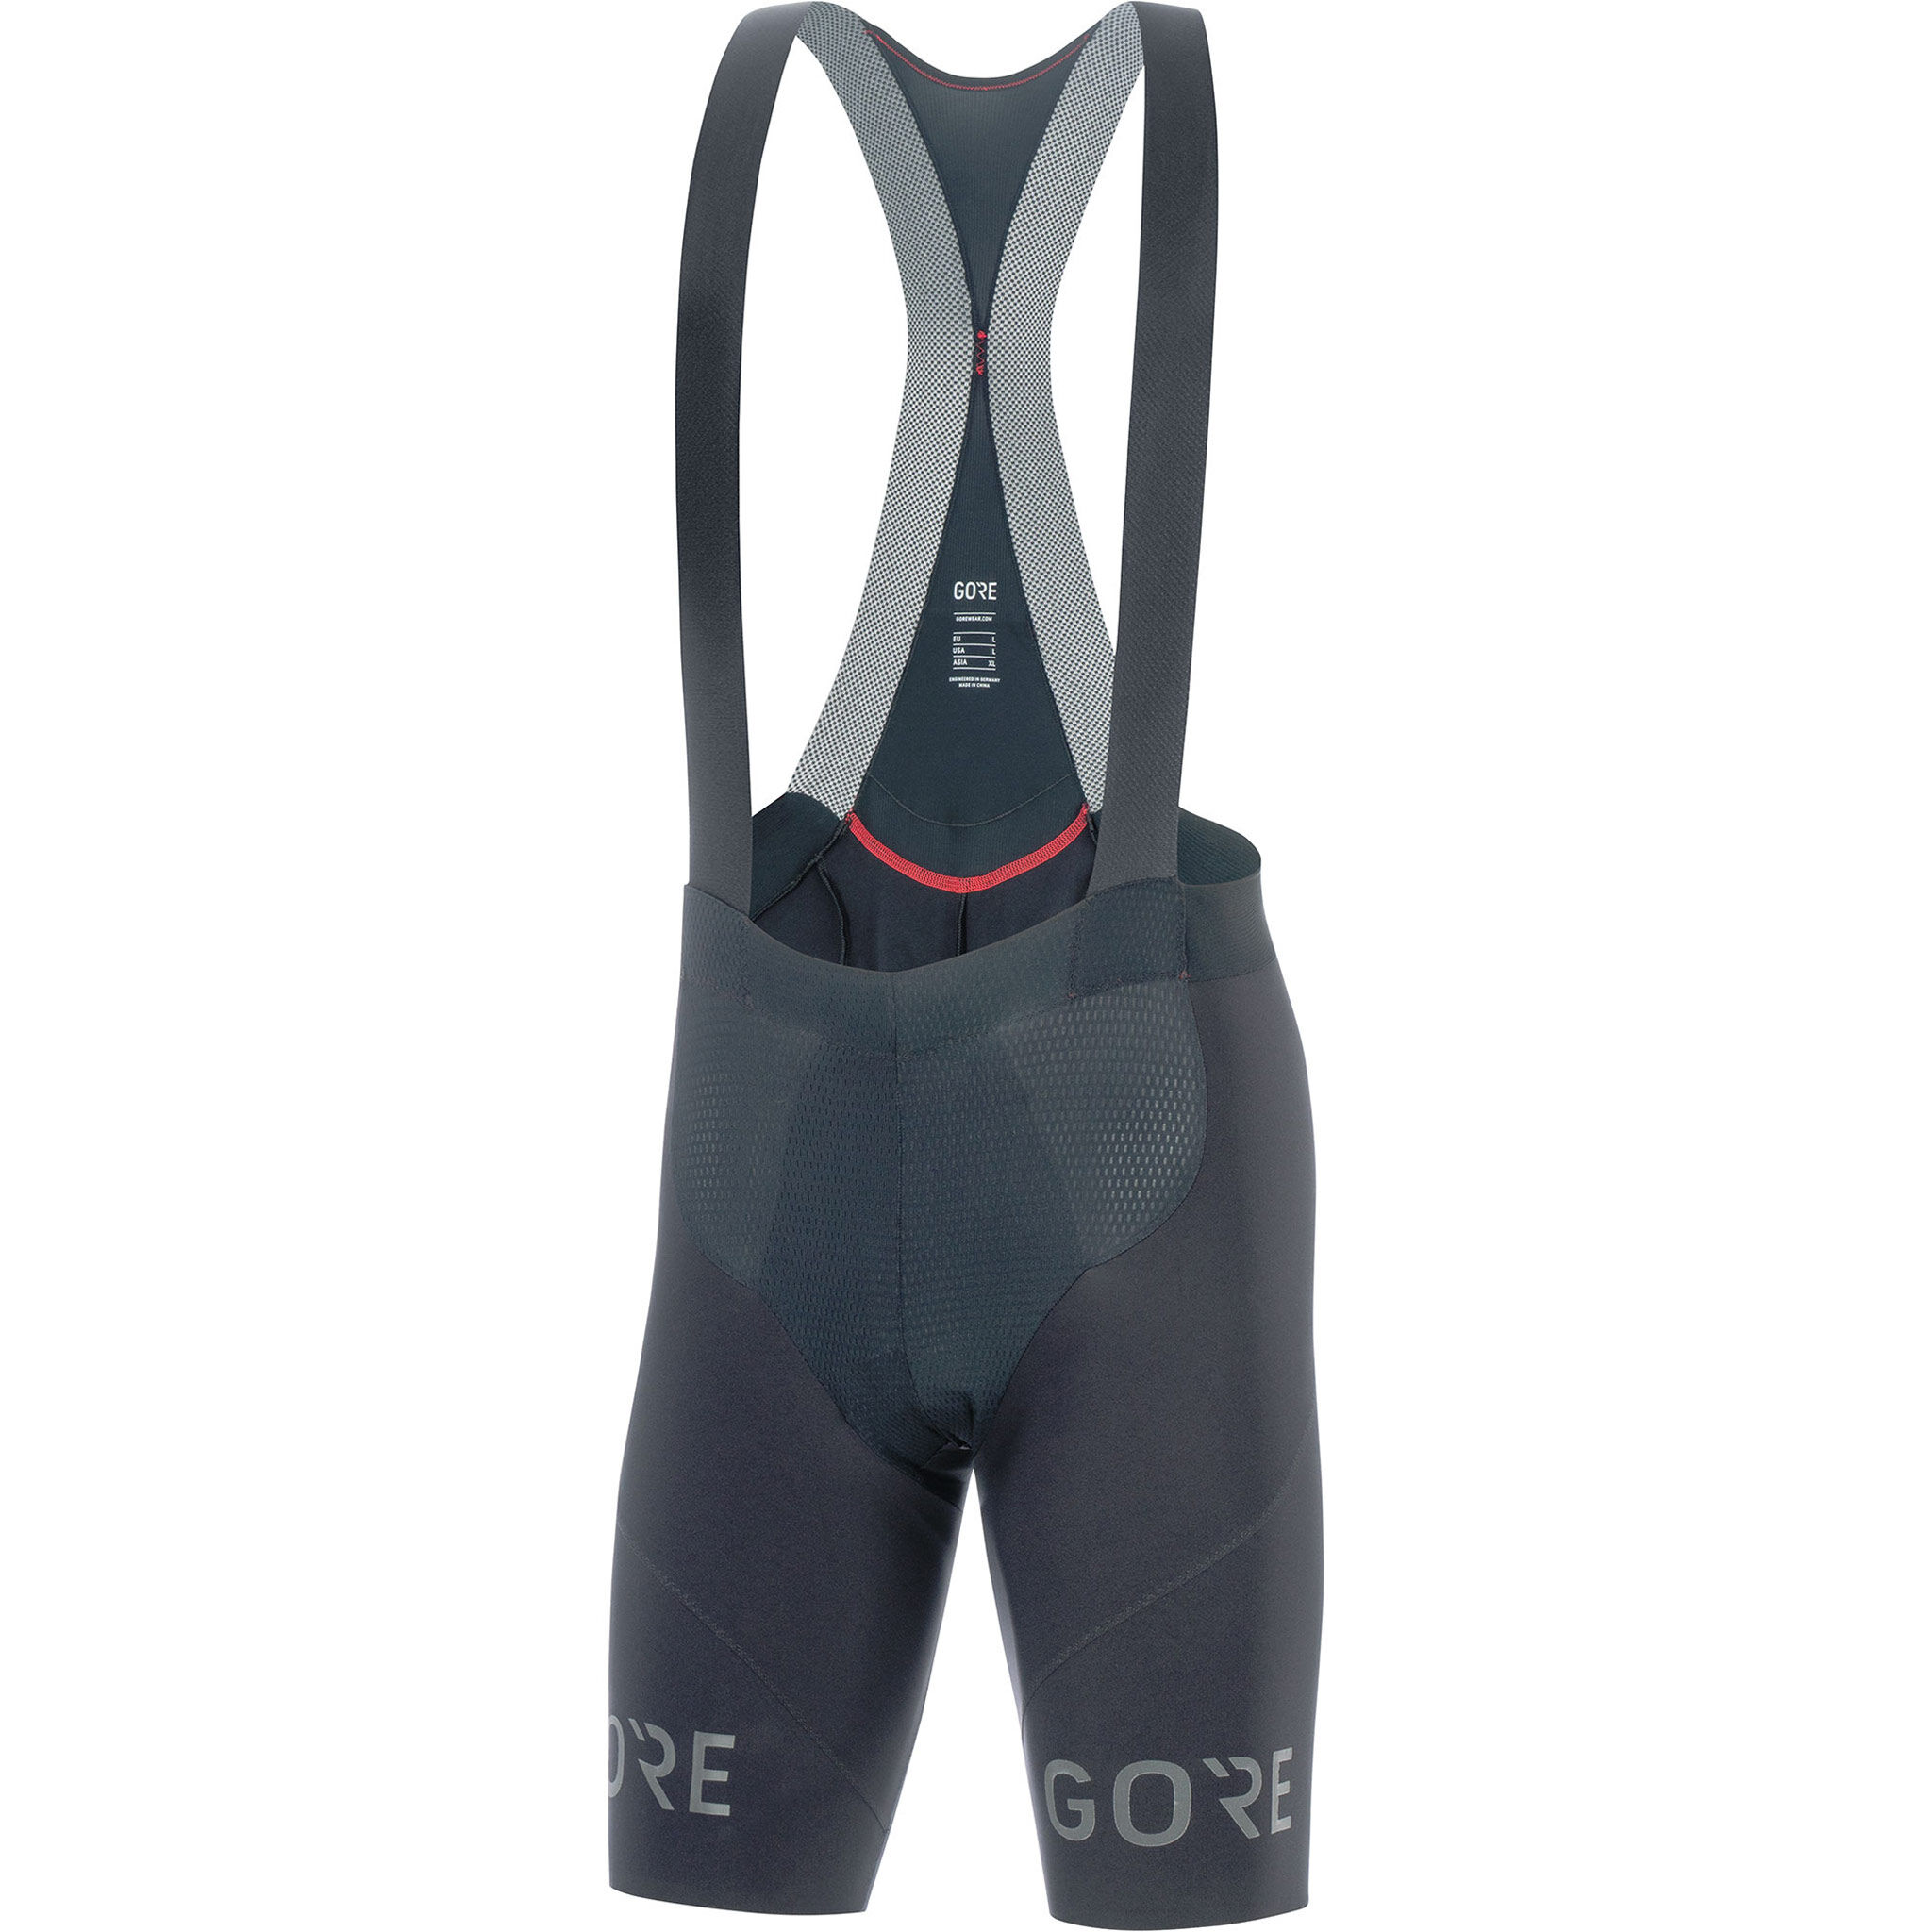 Gore Wear C7 Long Distance Bib Shorts+ - Culottes de ciclismo - Hombre